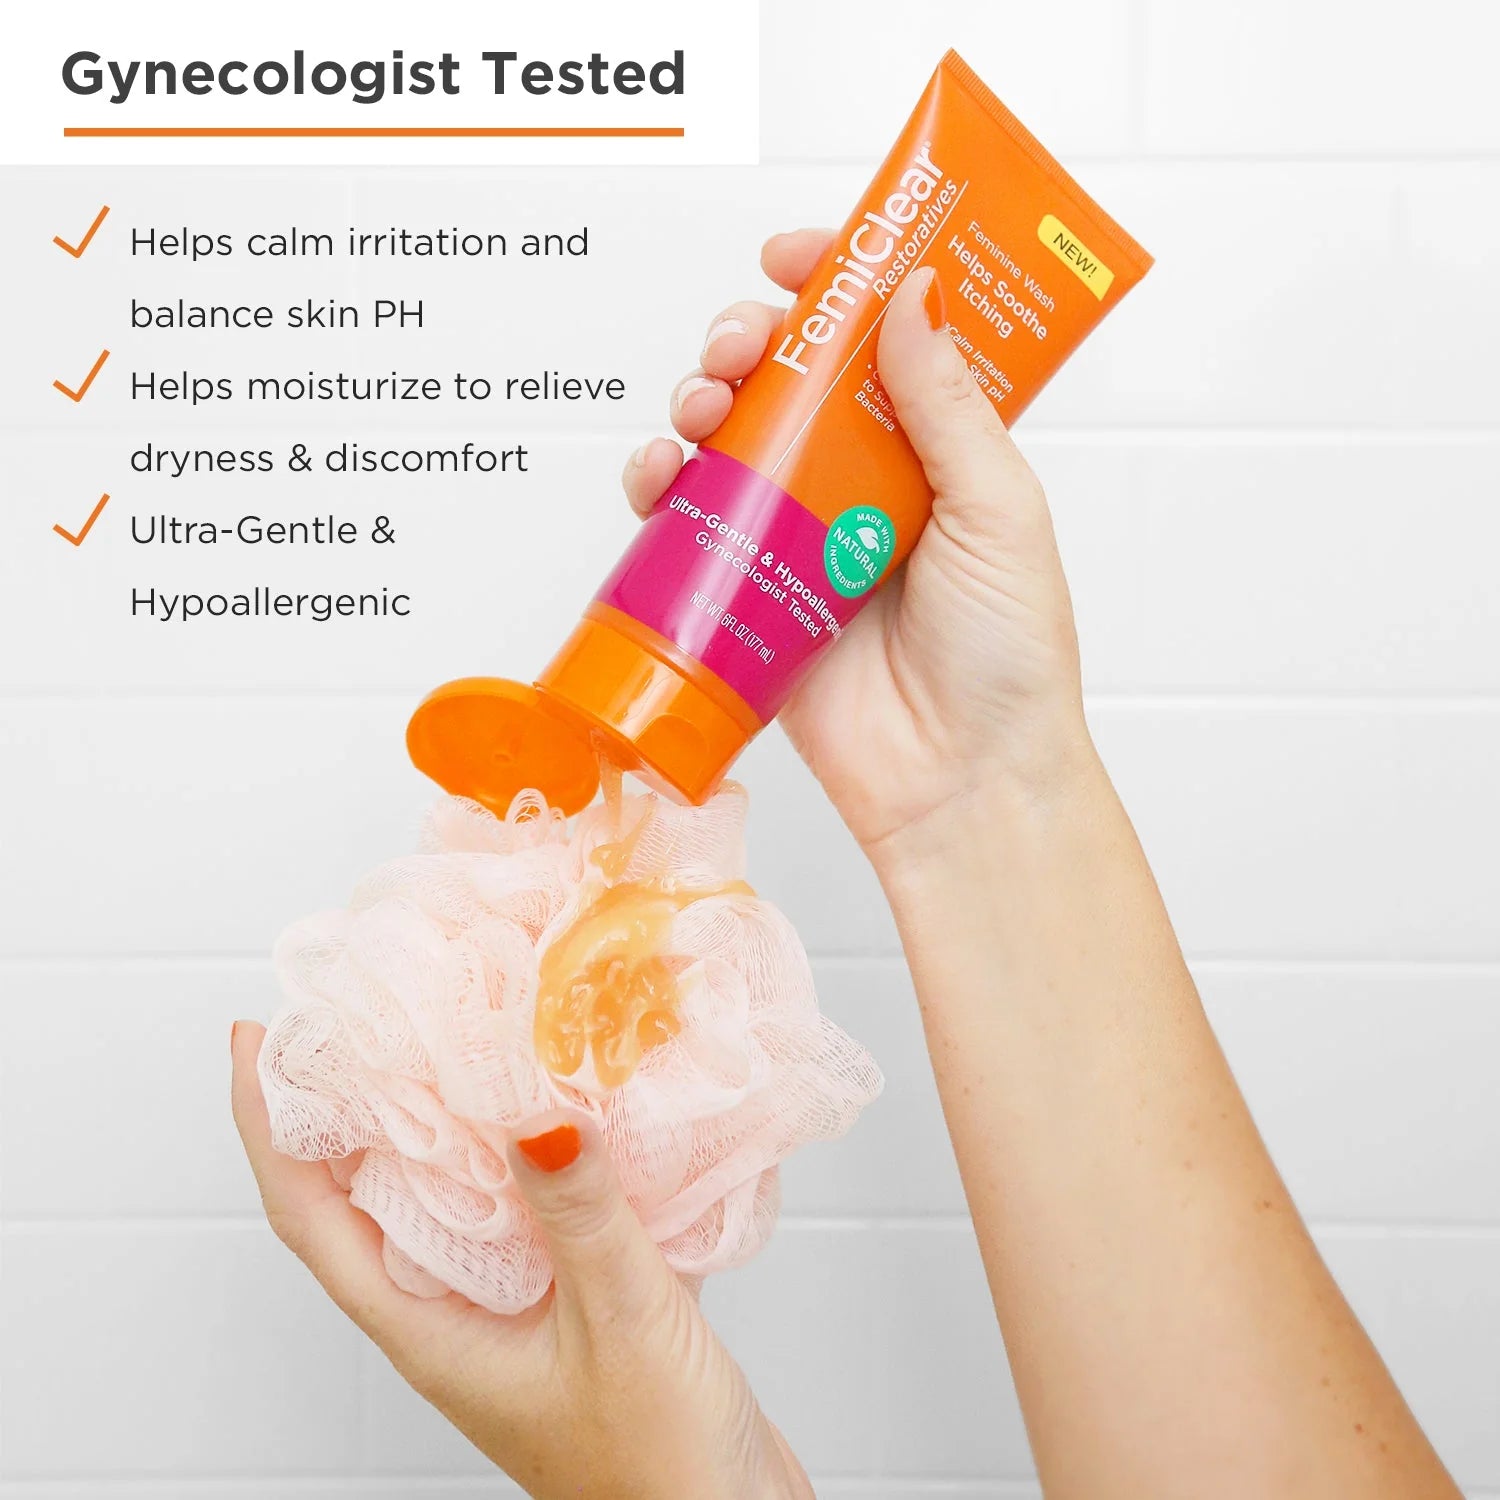 Gynecologist tested vaginal wash. PH balancing vaginal wash.